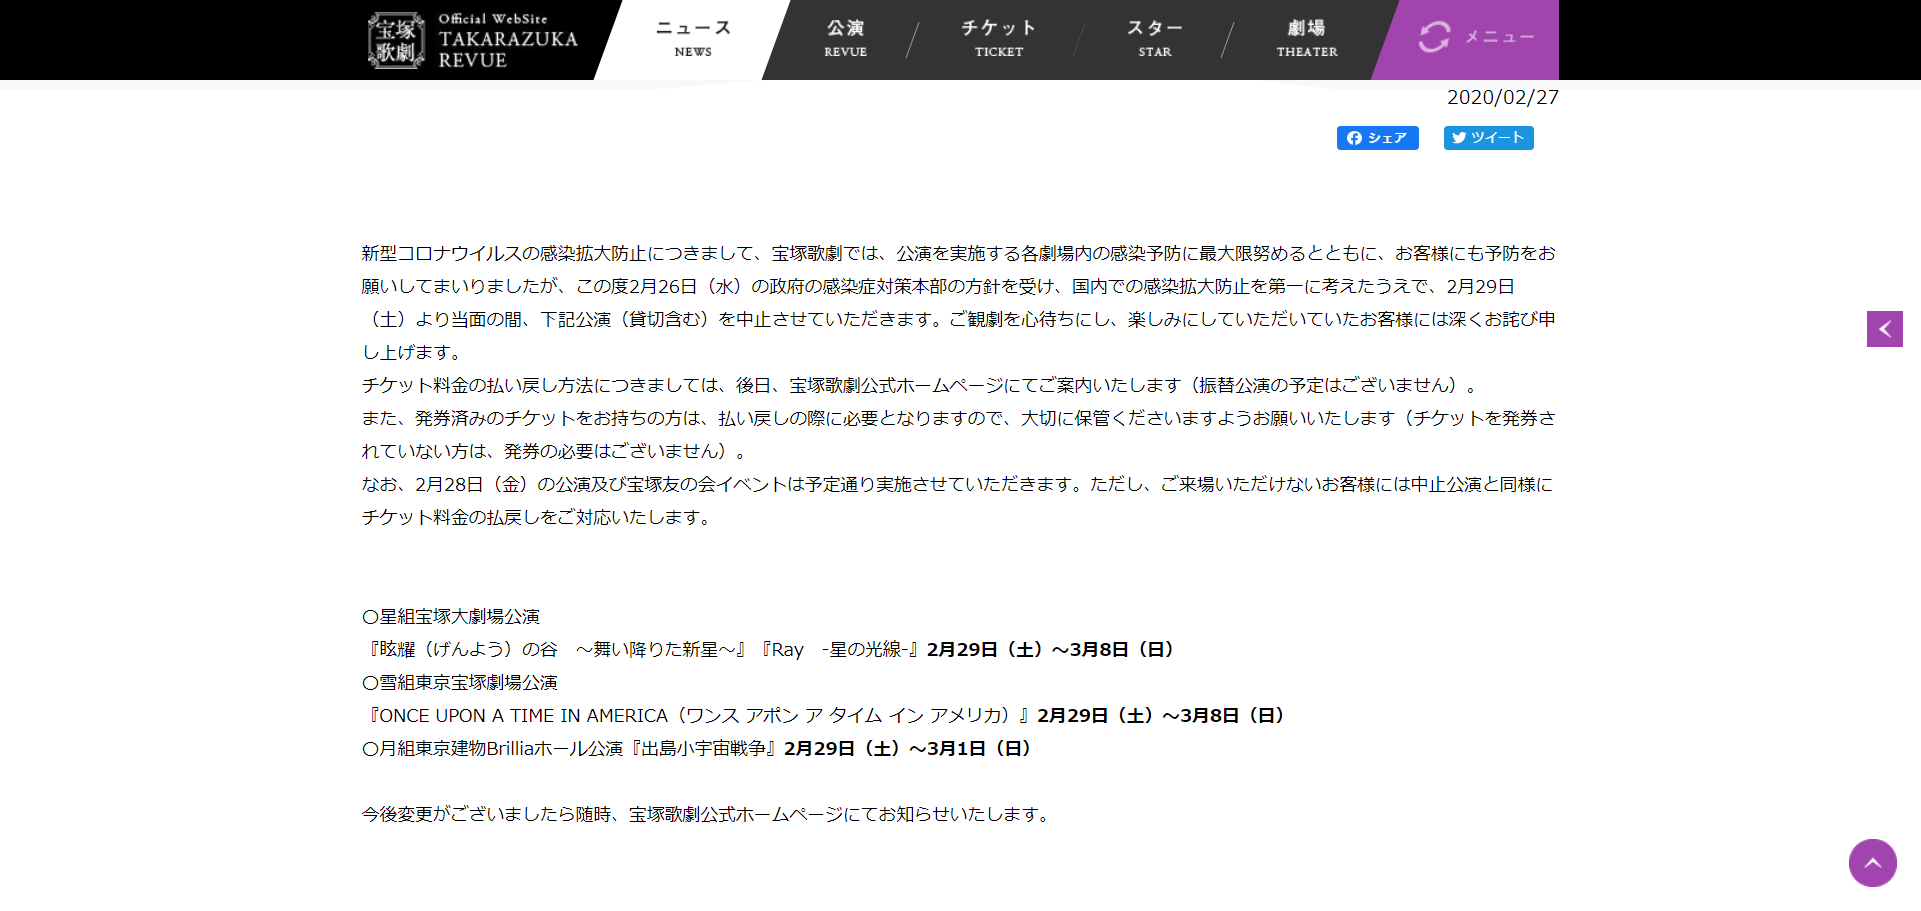 宝塚歌劇公演の中止について - ニュース - 宝塚歌劇公式ホームページ 